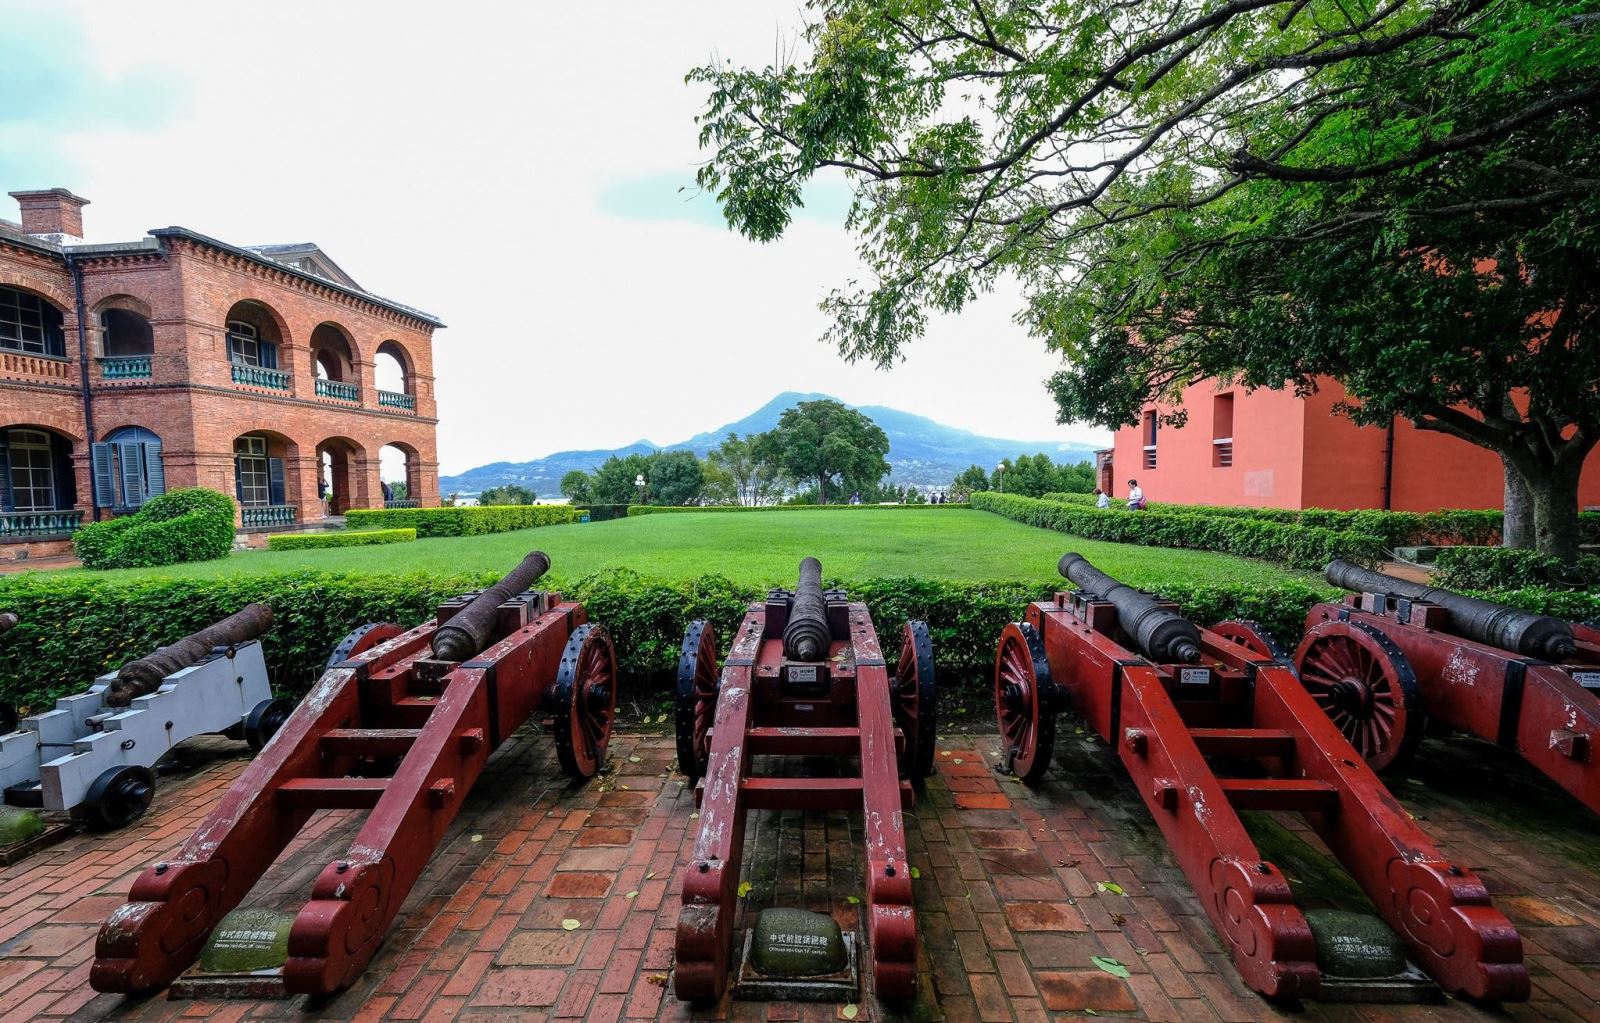 Pháo đài San Domingo là nơi lưu giữ rất nhiều dấu ấn và giá trị lịch sử đối với người dân Đài Loan